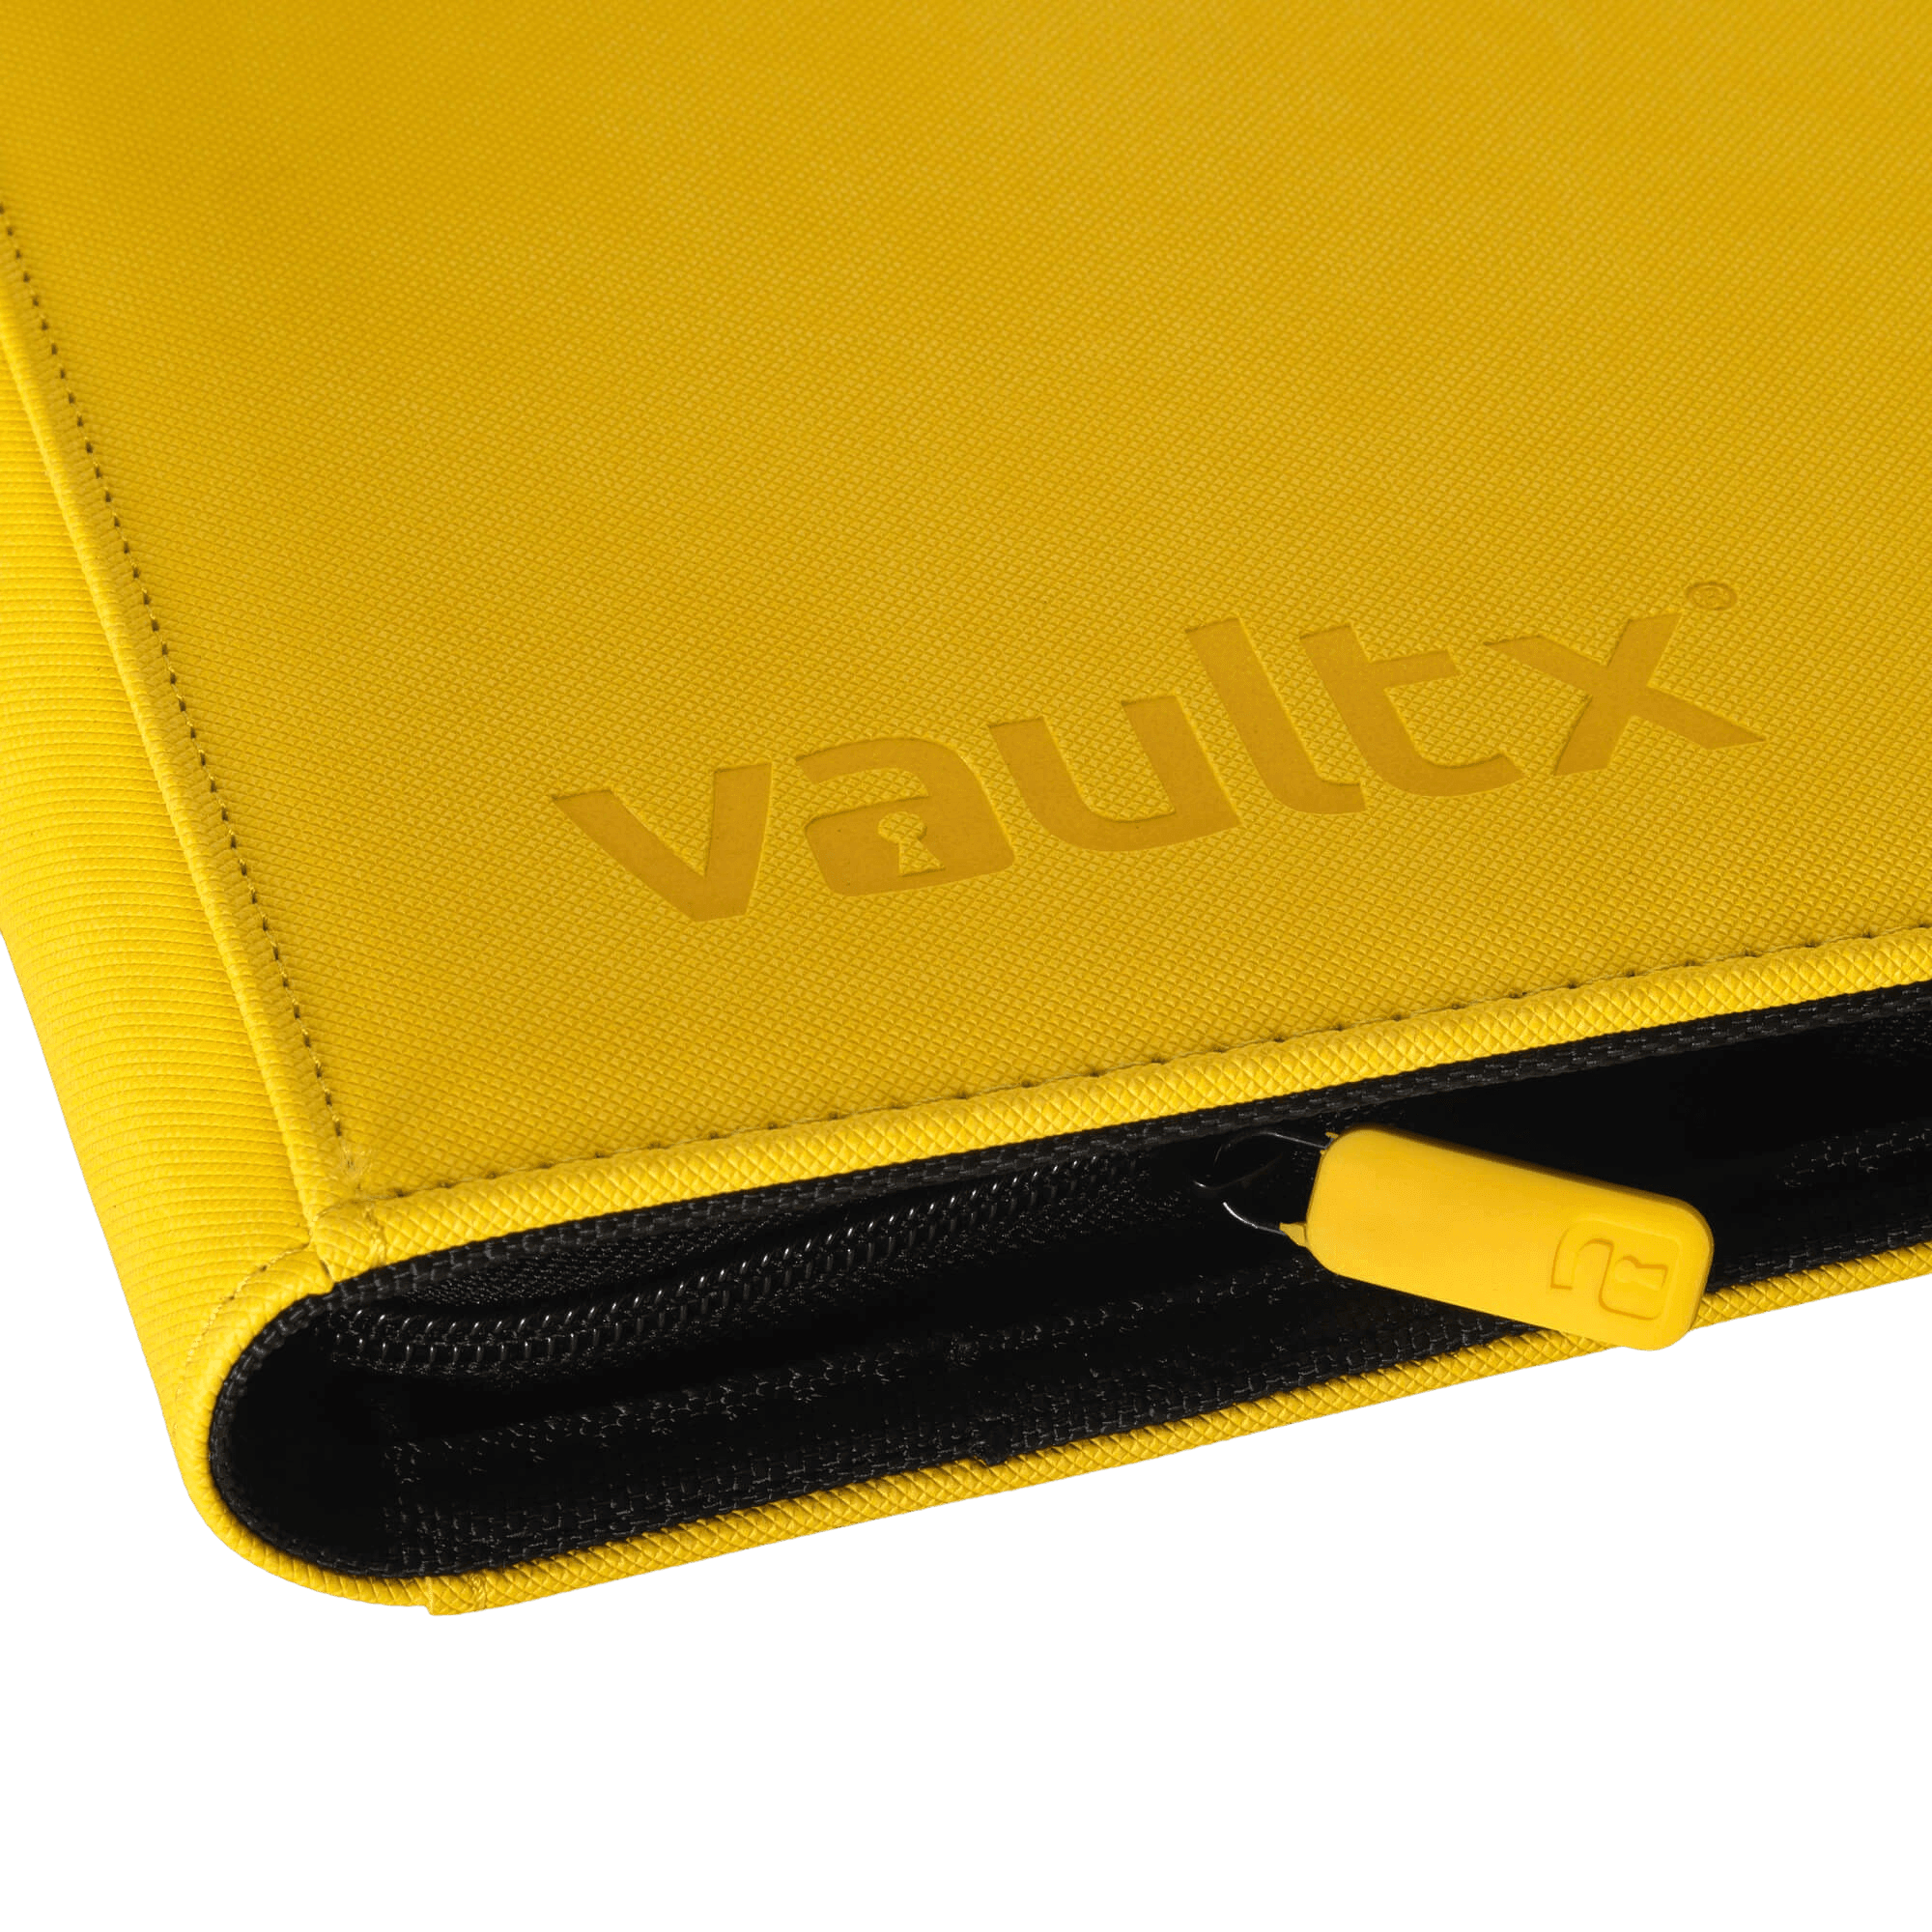 Vault X 9-Pocket Exo-Tec® Zip Binder - Yellow - The Card Vault